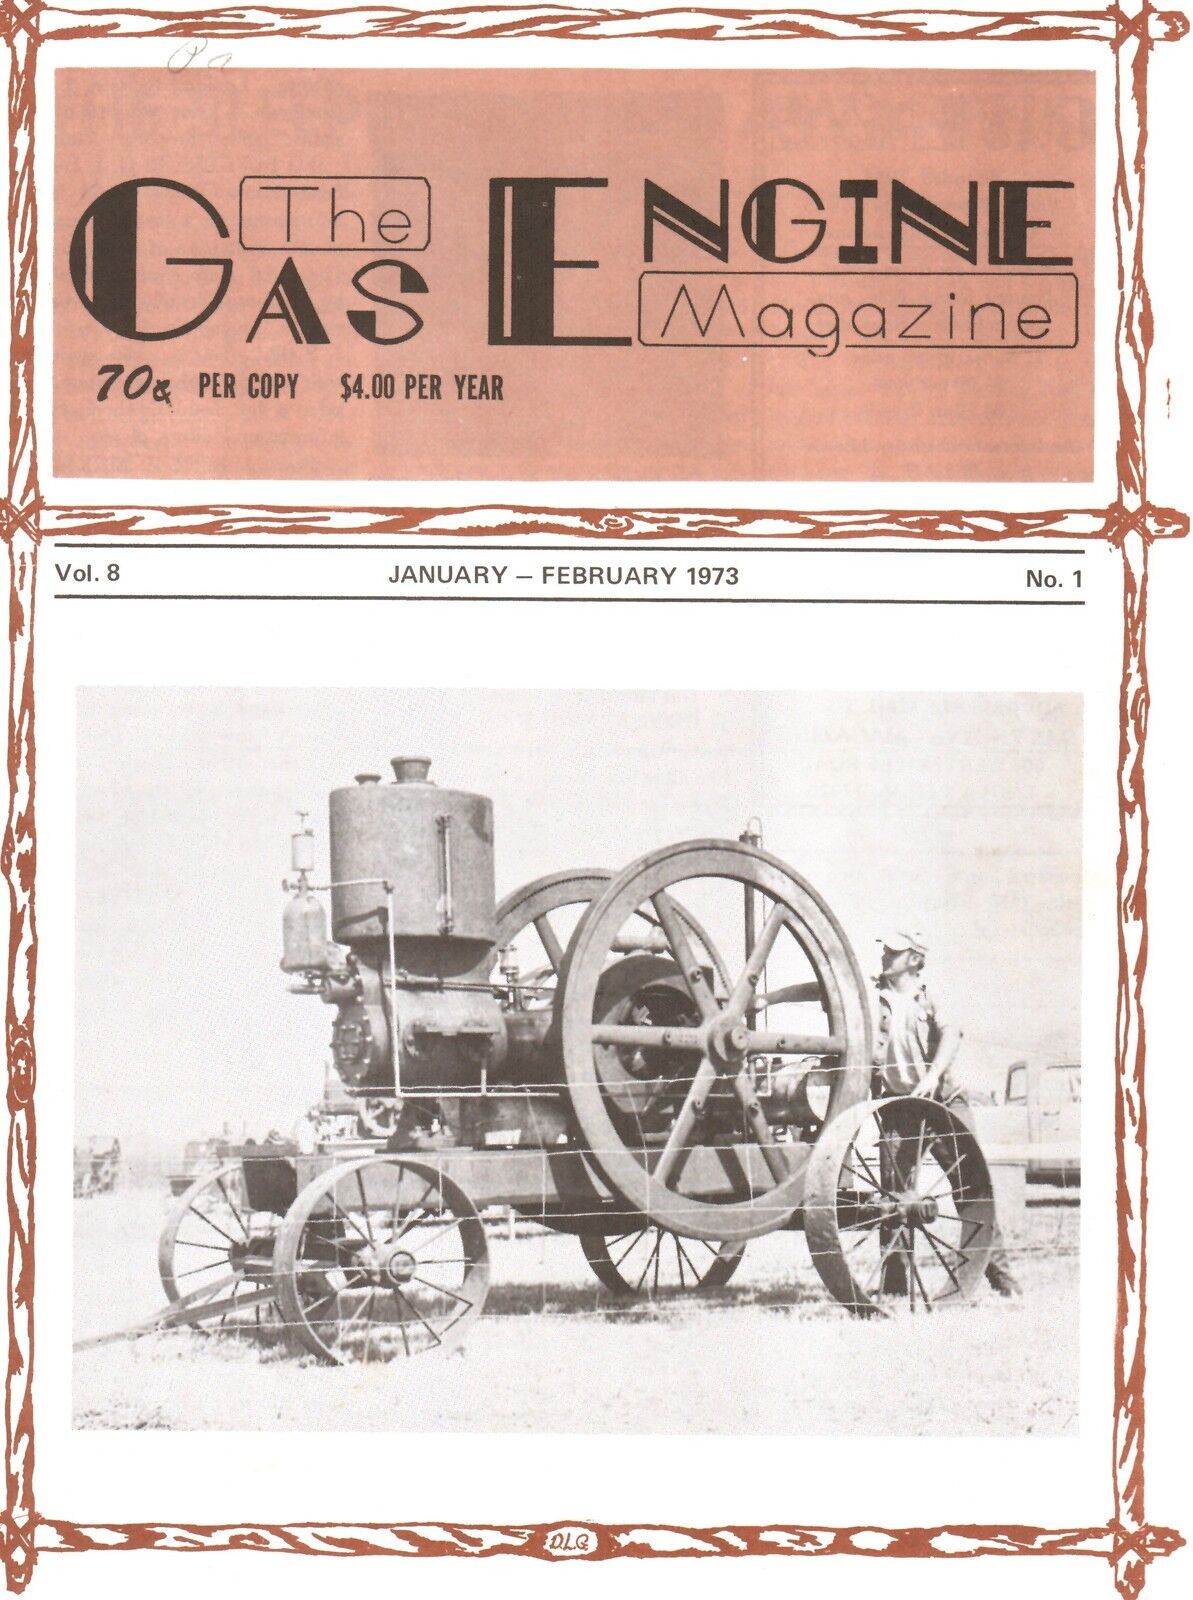 Pre John Deere Waterloo Boy Experimental tractors Sklovsky, 1973 Gas Engine Mag